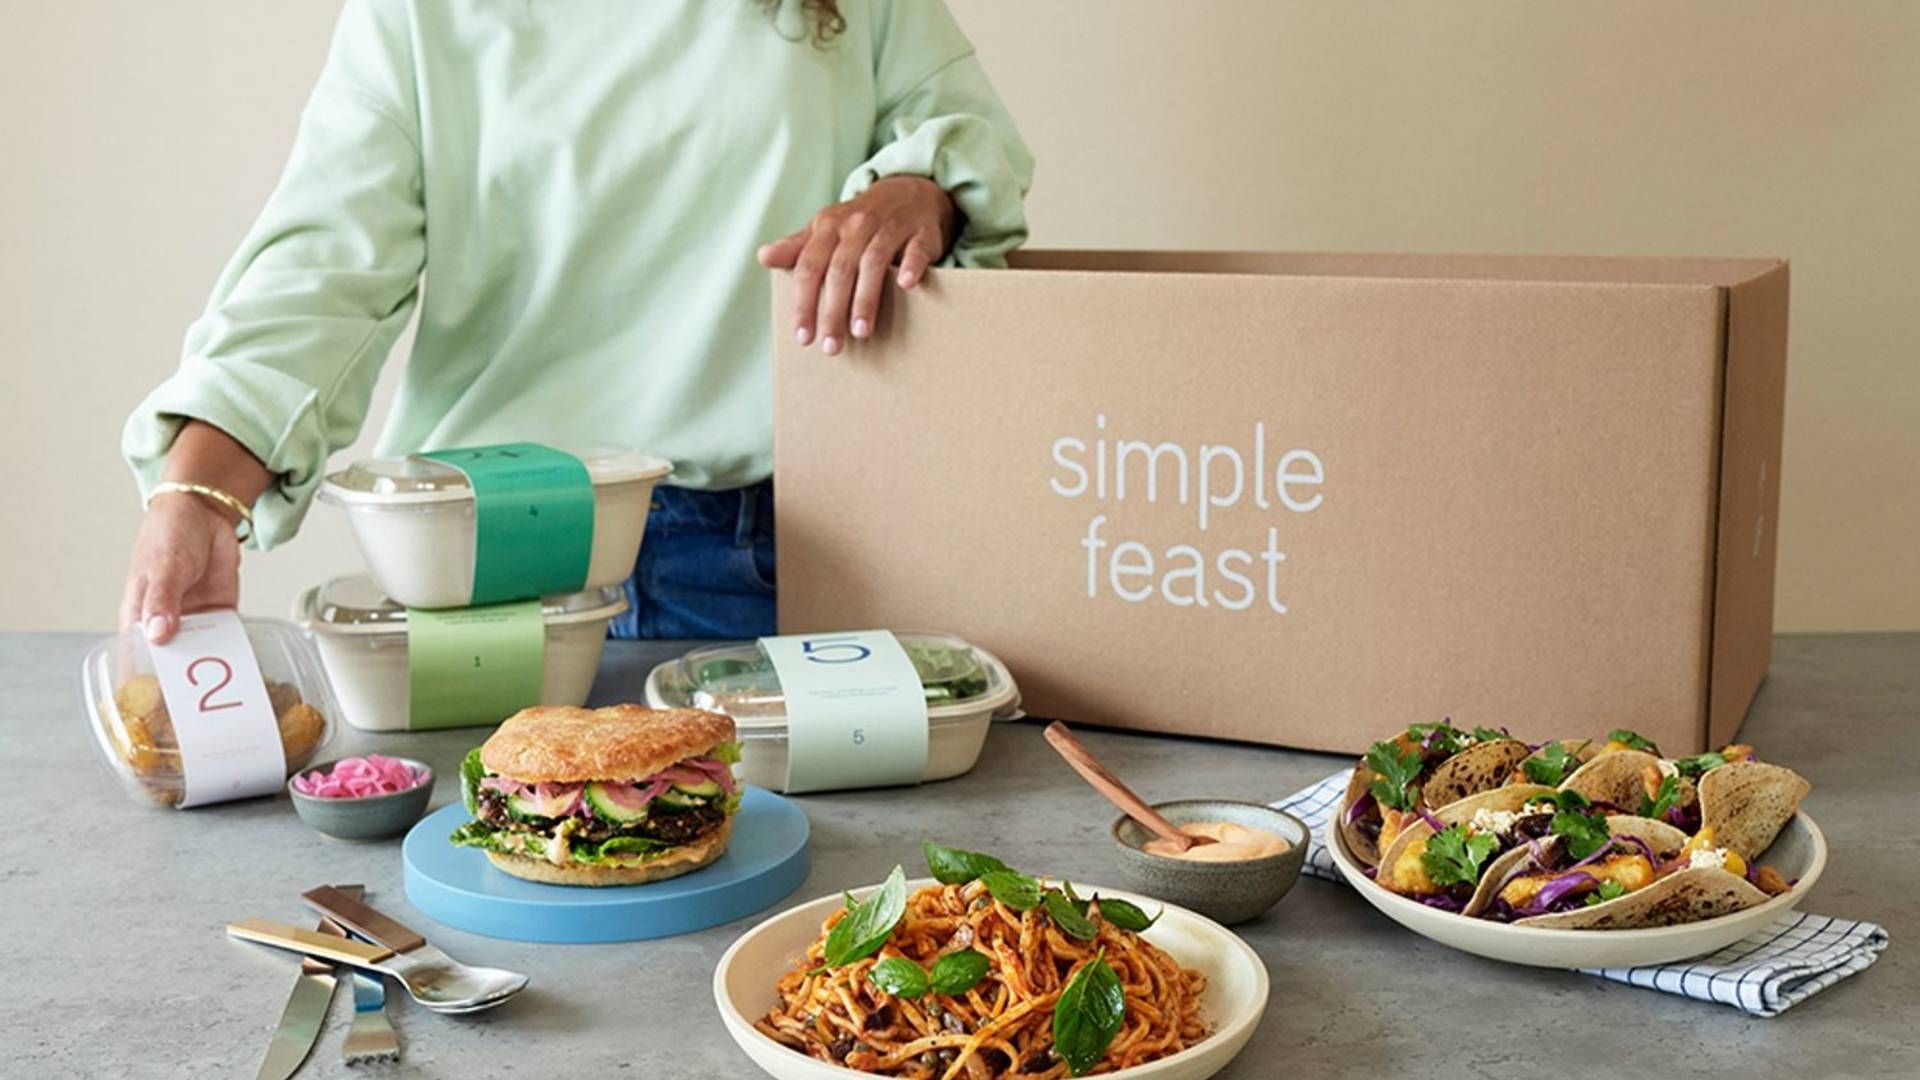 Simple Feast, der leverer veganske og vegetariske måltidskasser og dagligvarer, blev erklæret konkurs 7. september 2022. | Foto: PR/Simple Feast